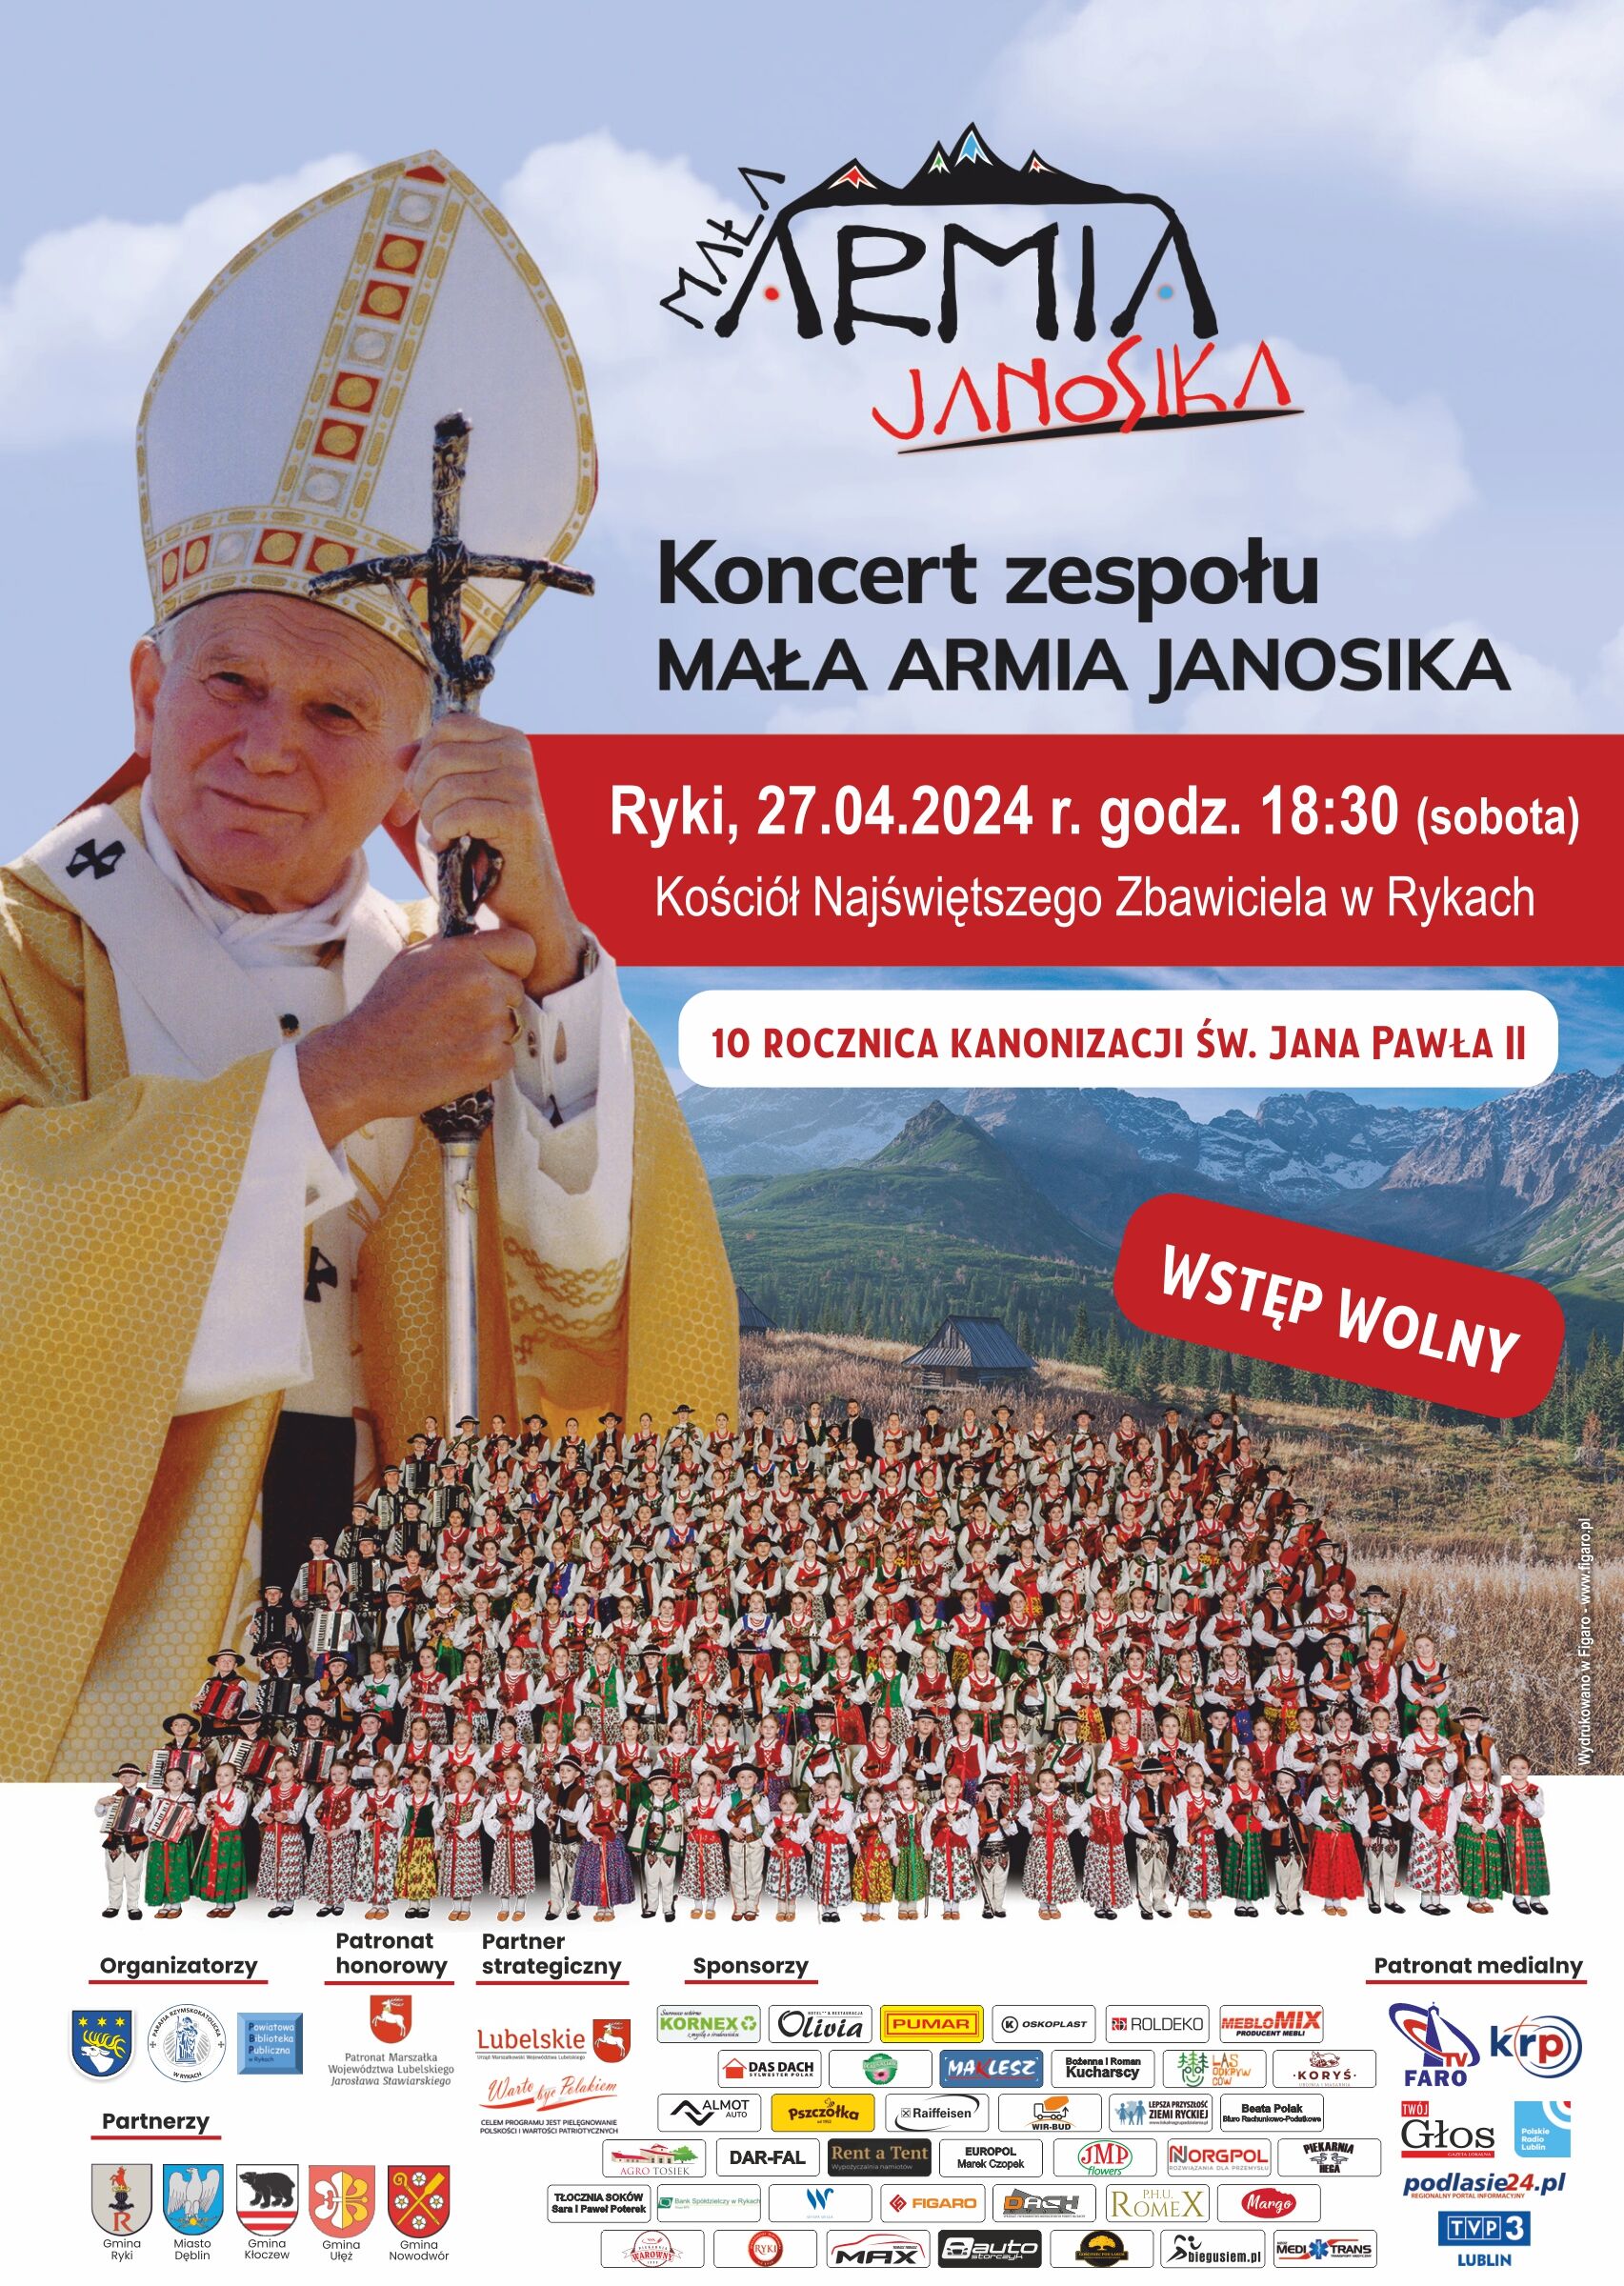 Plakat wydarzenia z postacią Jana Pawła II w centrum, w tle zielone wzgórza i niebo oraz wiele osób u dołu z logami sponsorów